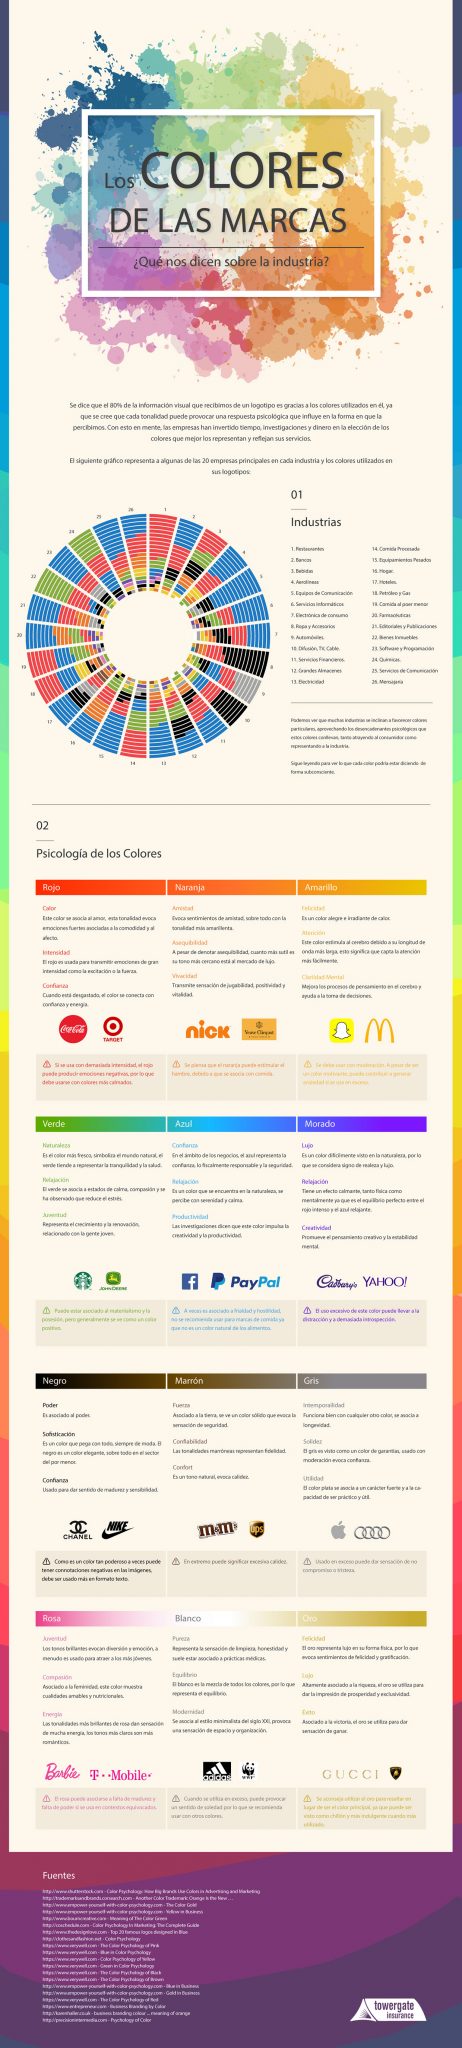 colores y marcas industrial empresas